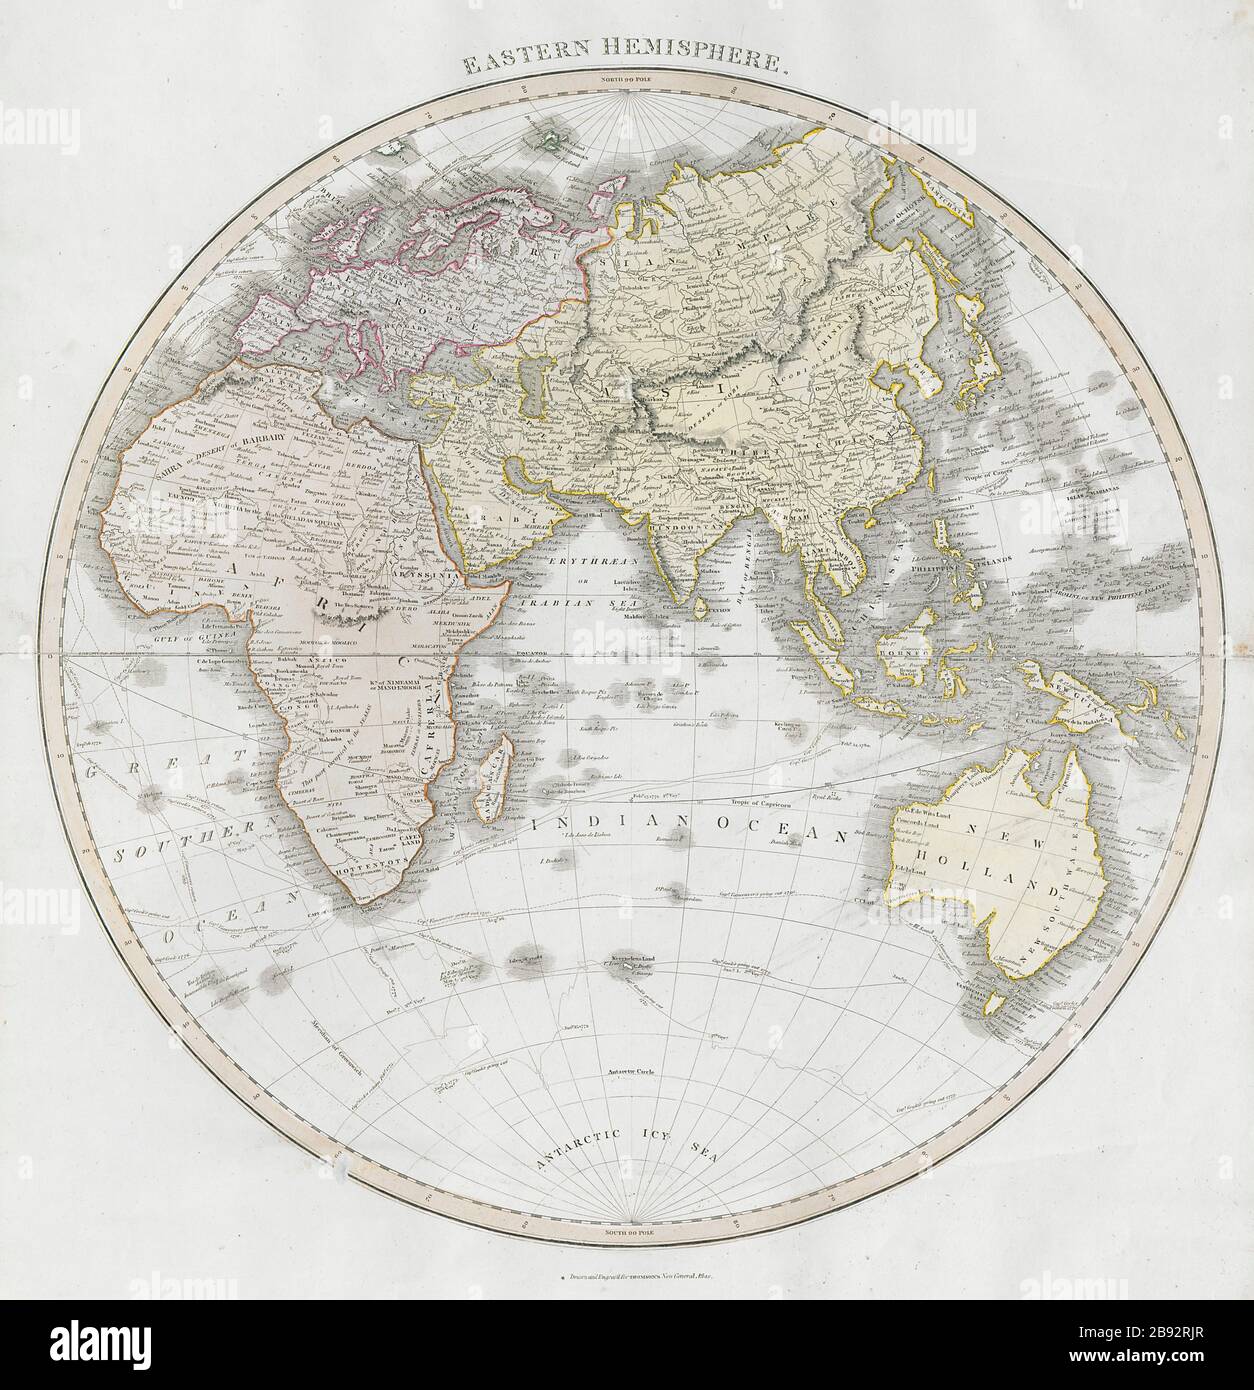 Африка восточное полушарие. Карта восточного полушария. Географическая карта восточного полушария. Восточное полушарие Европы. Восточное полушарие моря.